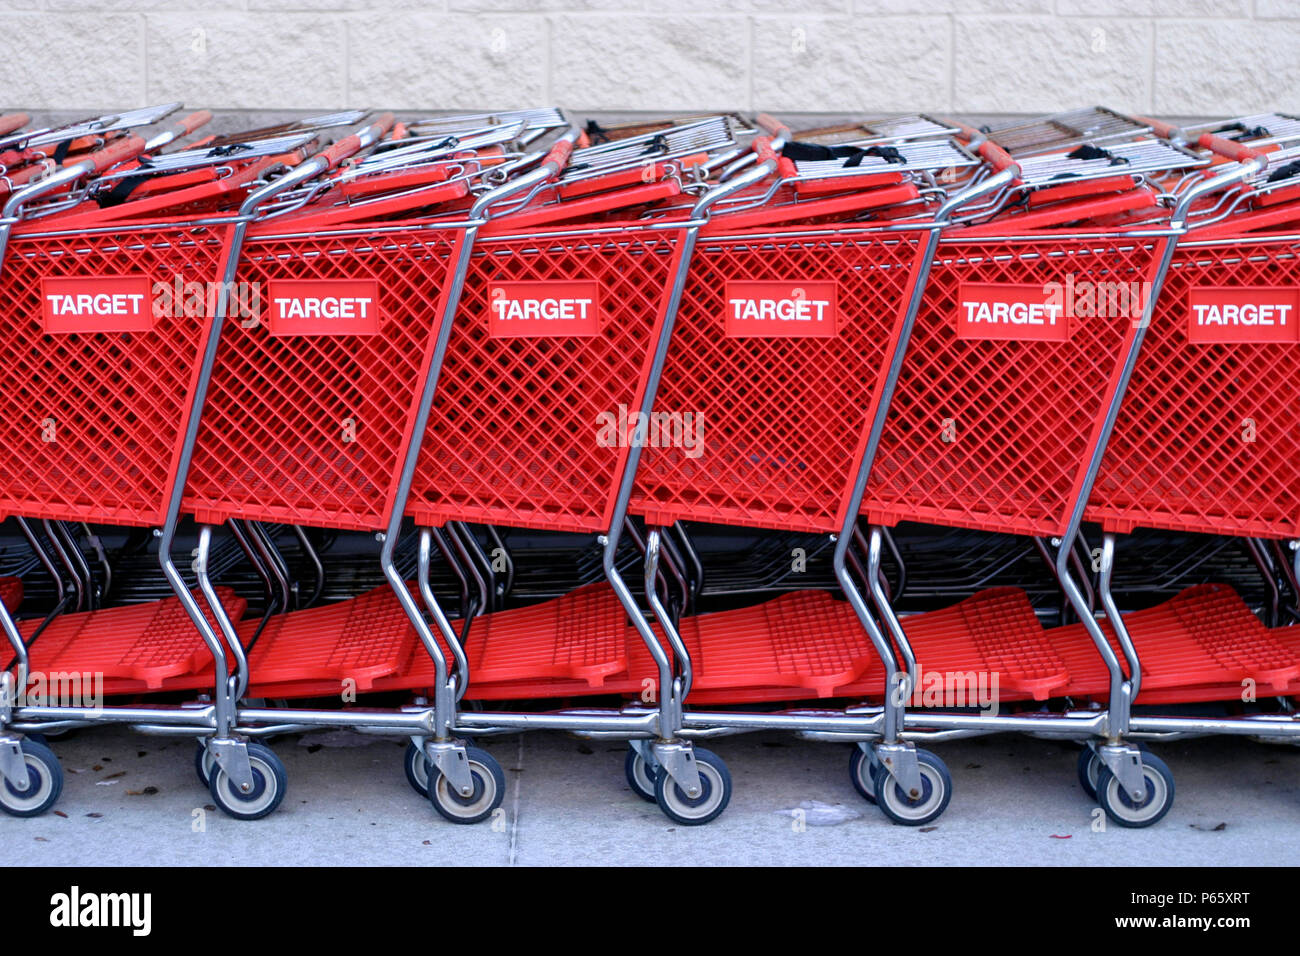 La economía de Estados Unidos: detalle de carritos de supermercado. Foto de stock